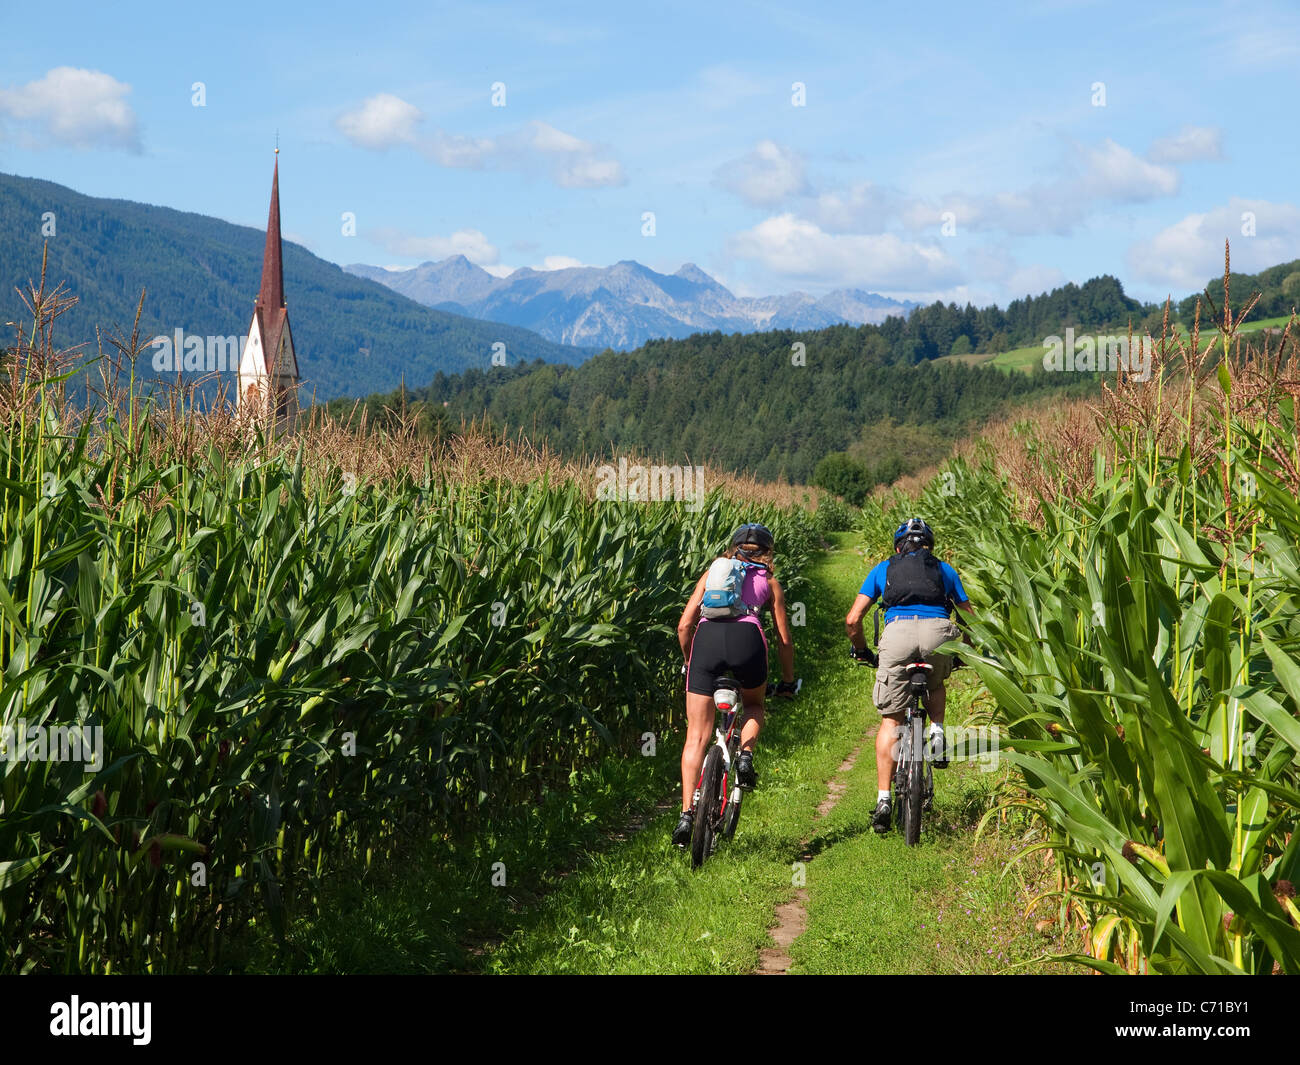 Zwei Mountainbiker fahren zwischen Maisfeldern im Pustertal, mit einer Kirche im Hintergrund. Stockfoto